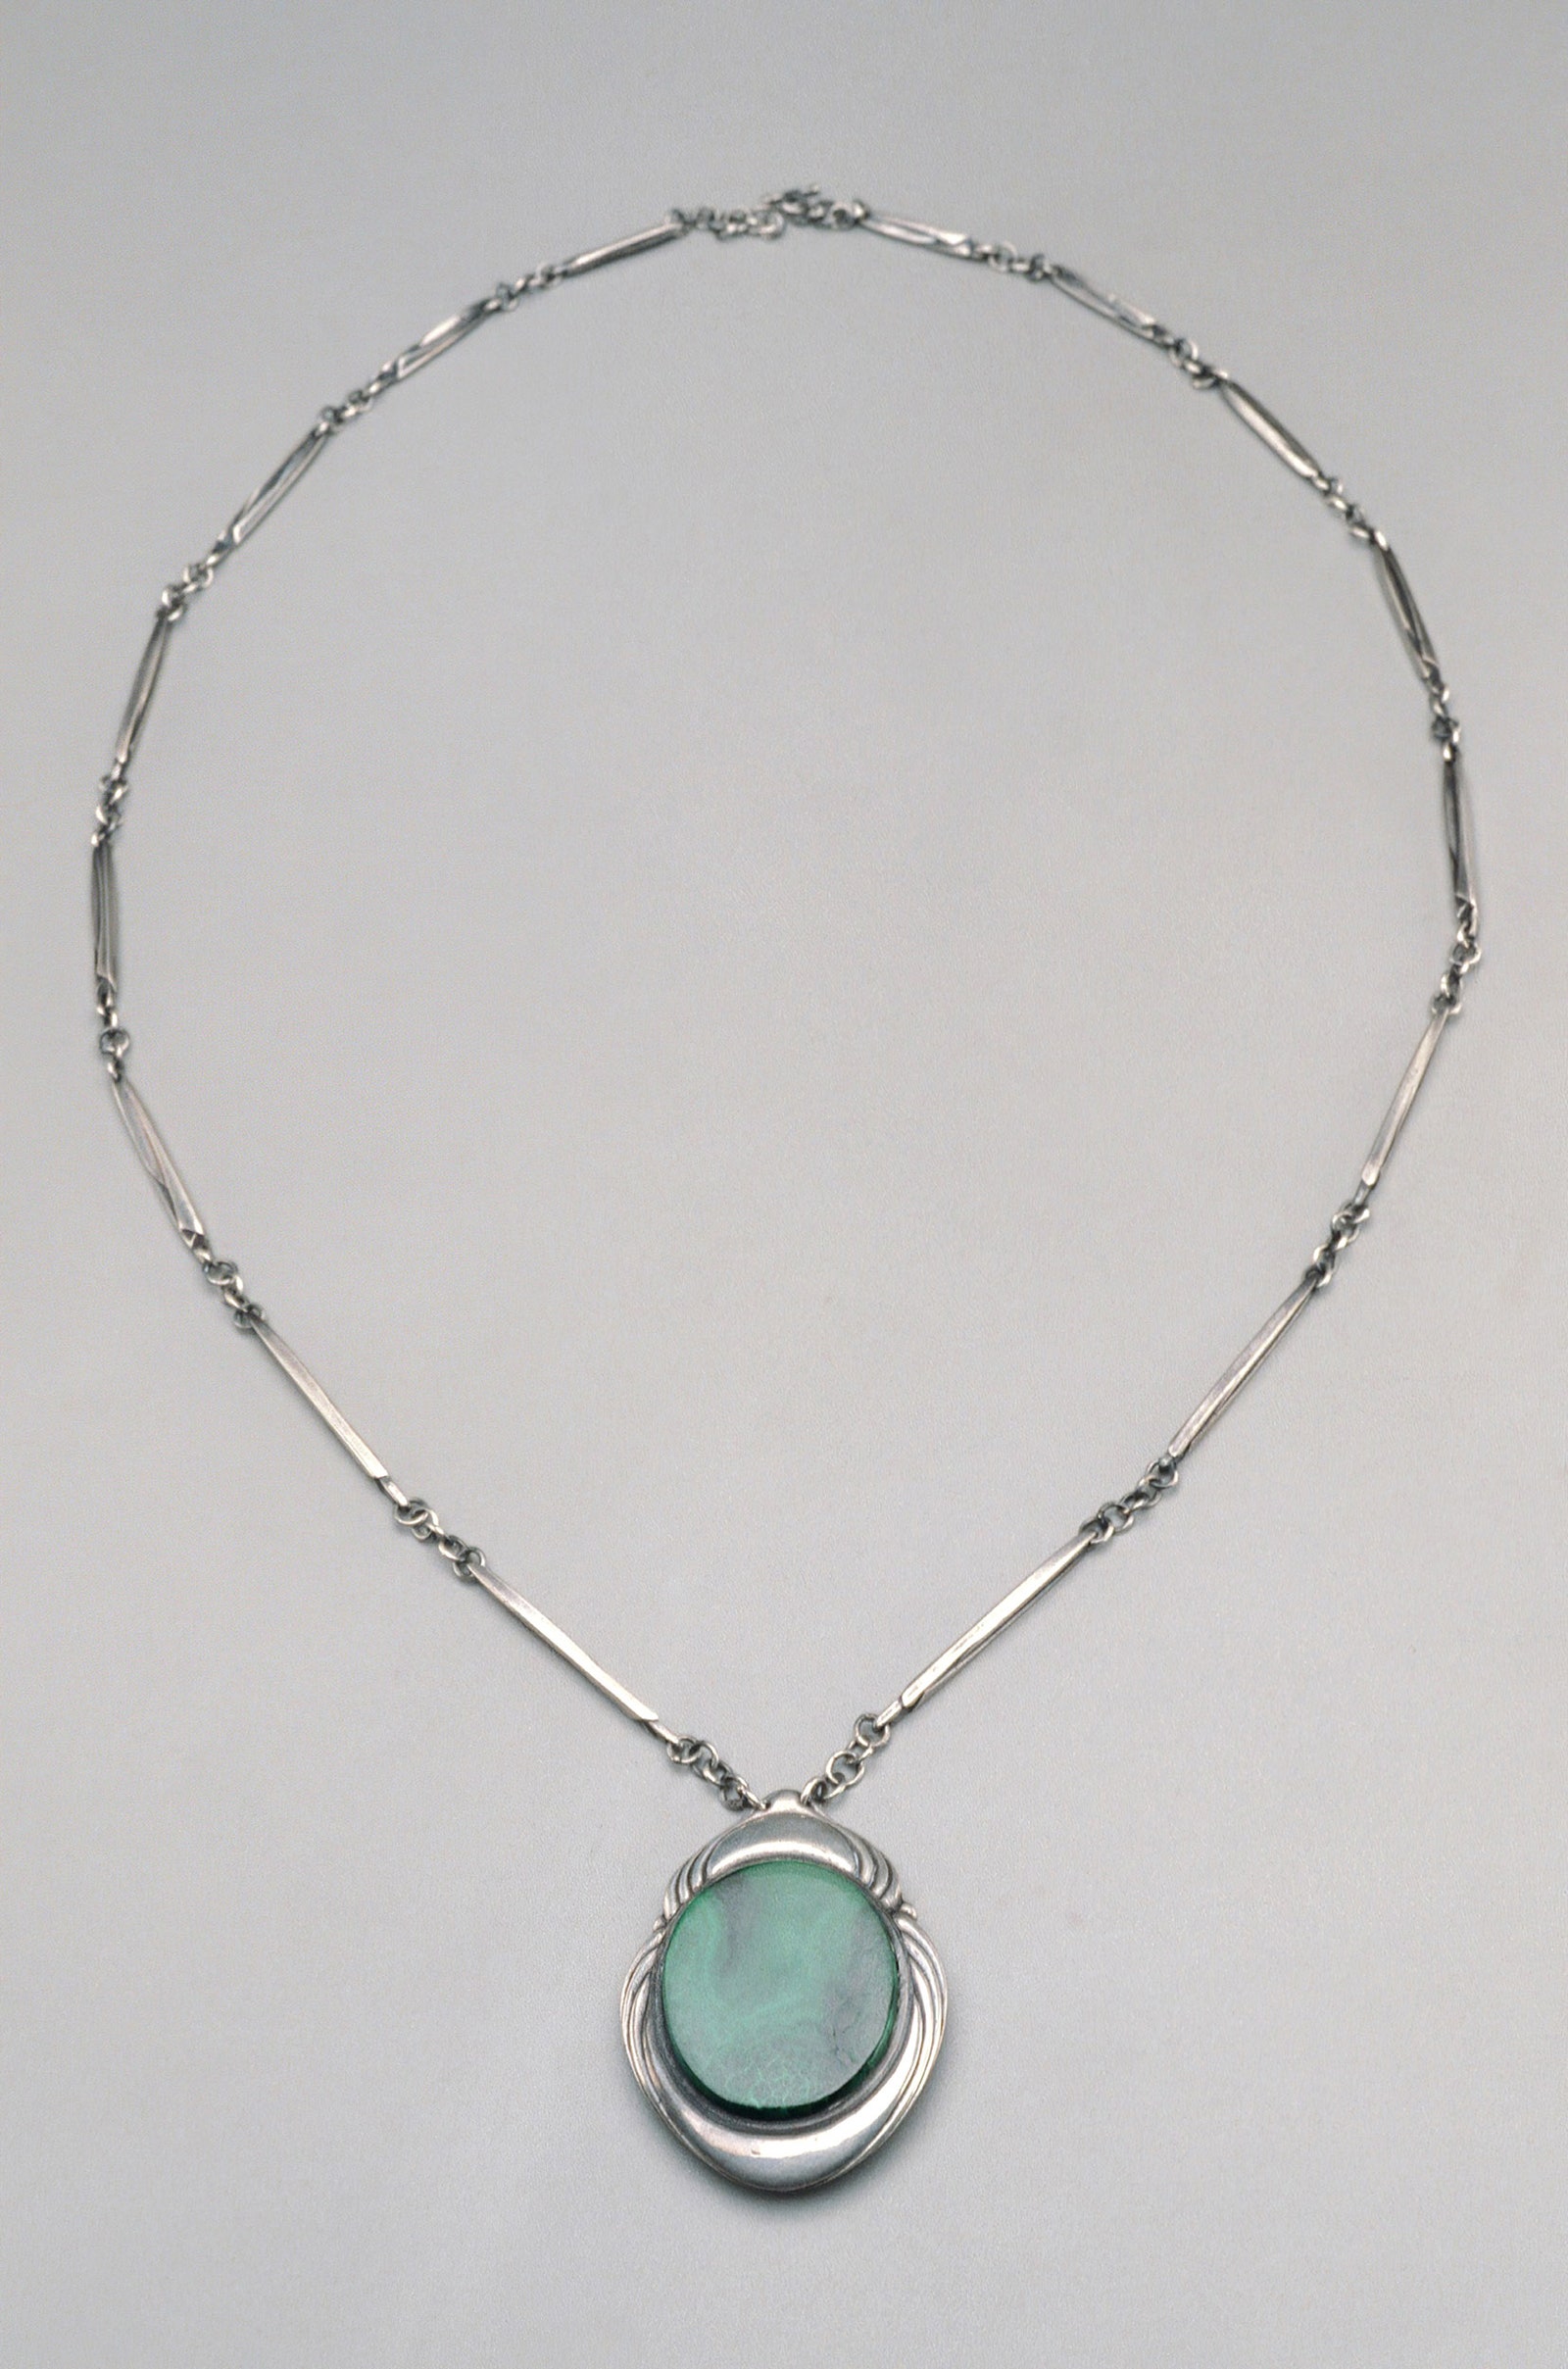 Гарри Бертойя . Ожерелье и кулон между 1937 и 1943 годами малахит и серебро. Общий размер 41 × 29 см.